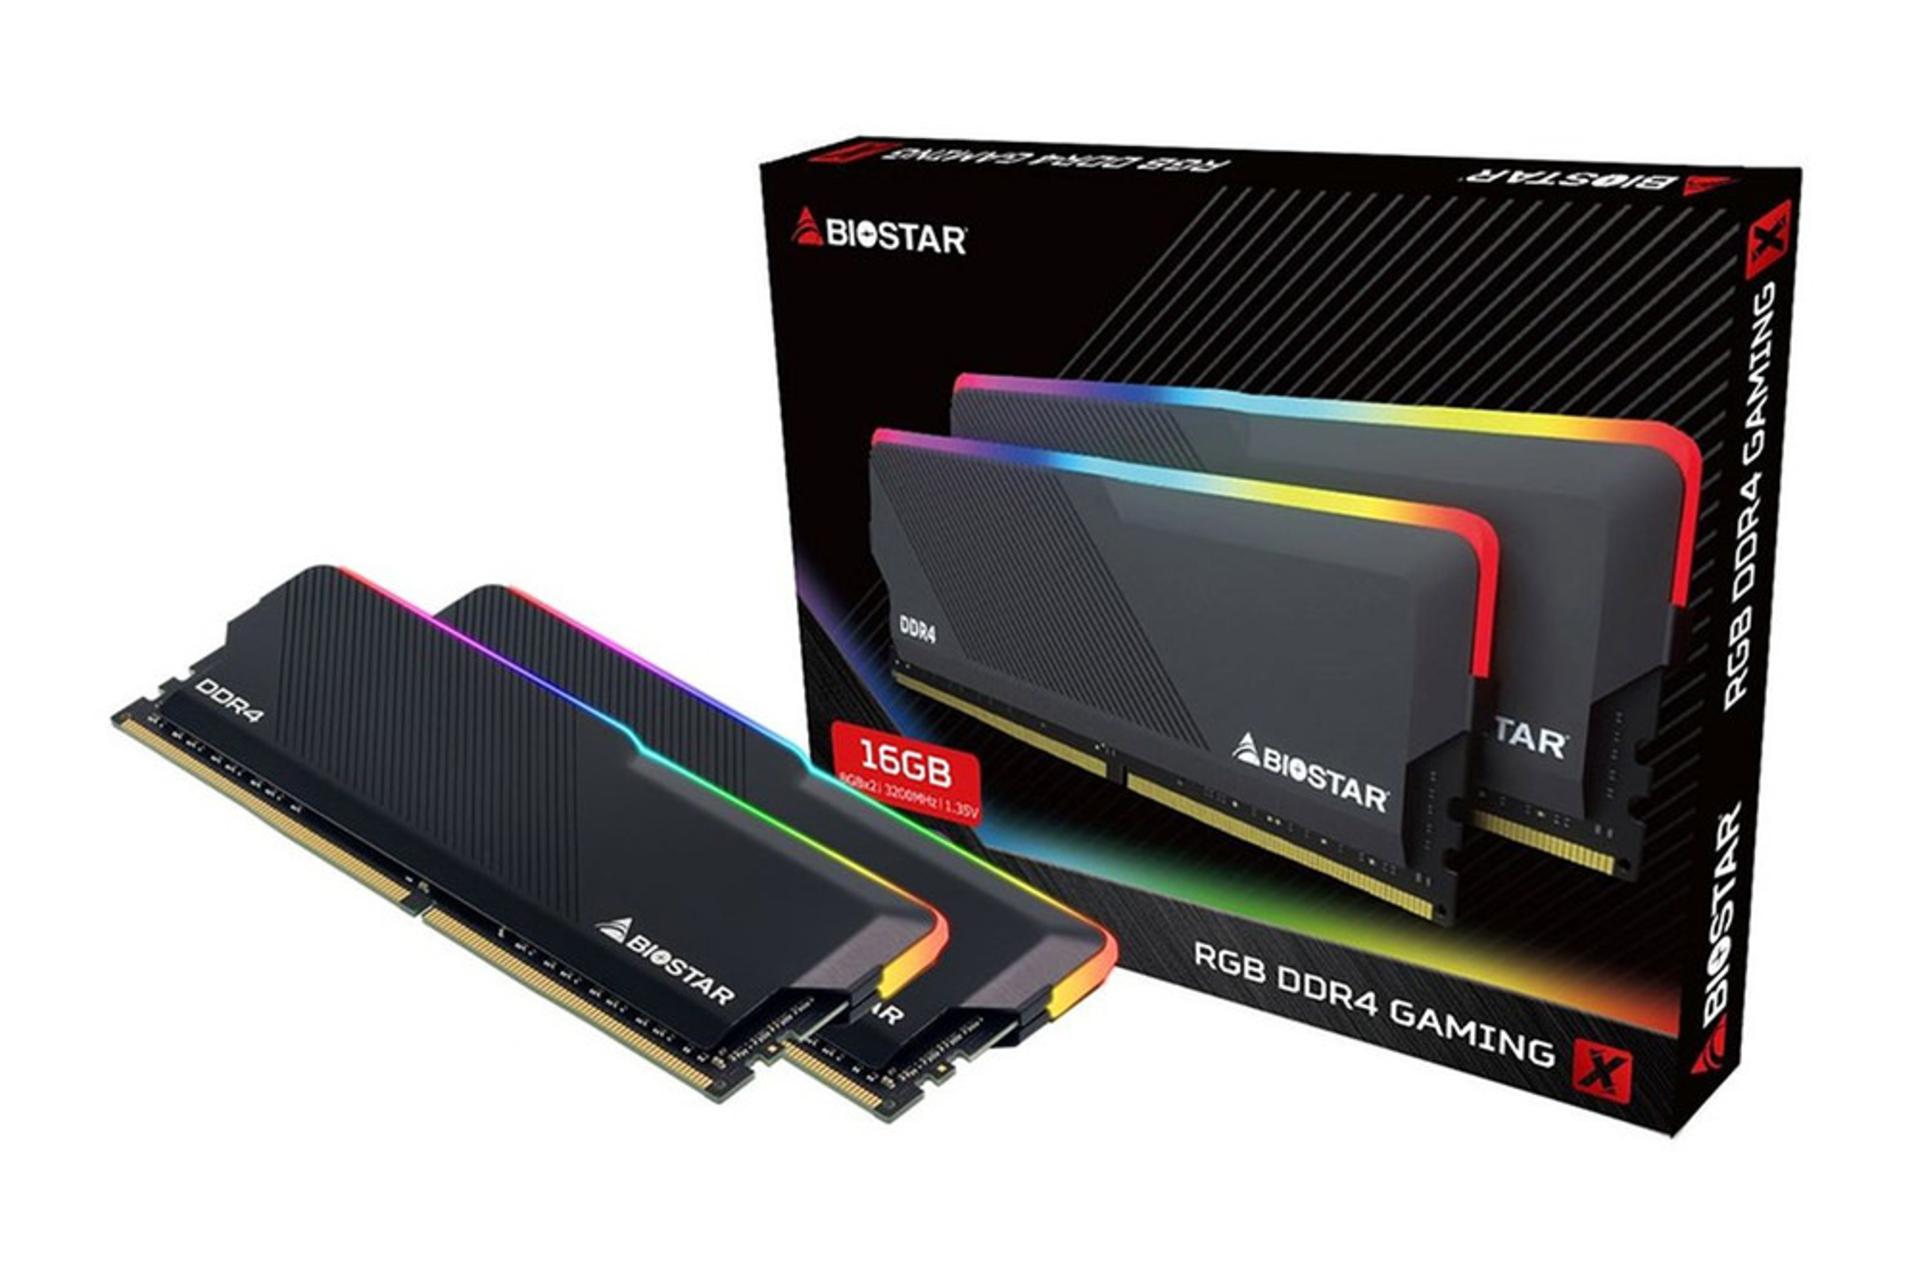  رم بایواستار GAMING X ظرفیت 16 گیگابایت (2x8) از نوع DDR4-3200 بسته بندی و نمای RGB